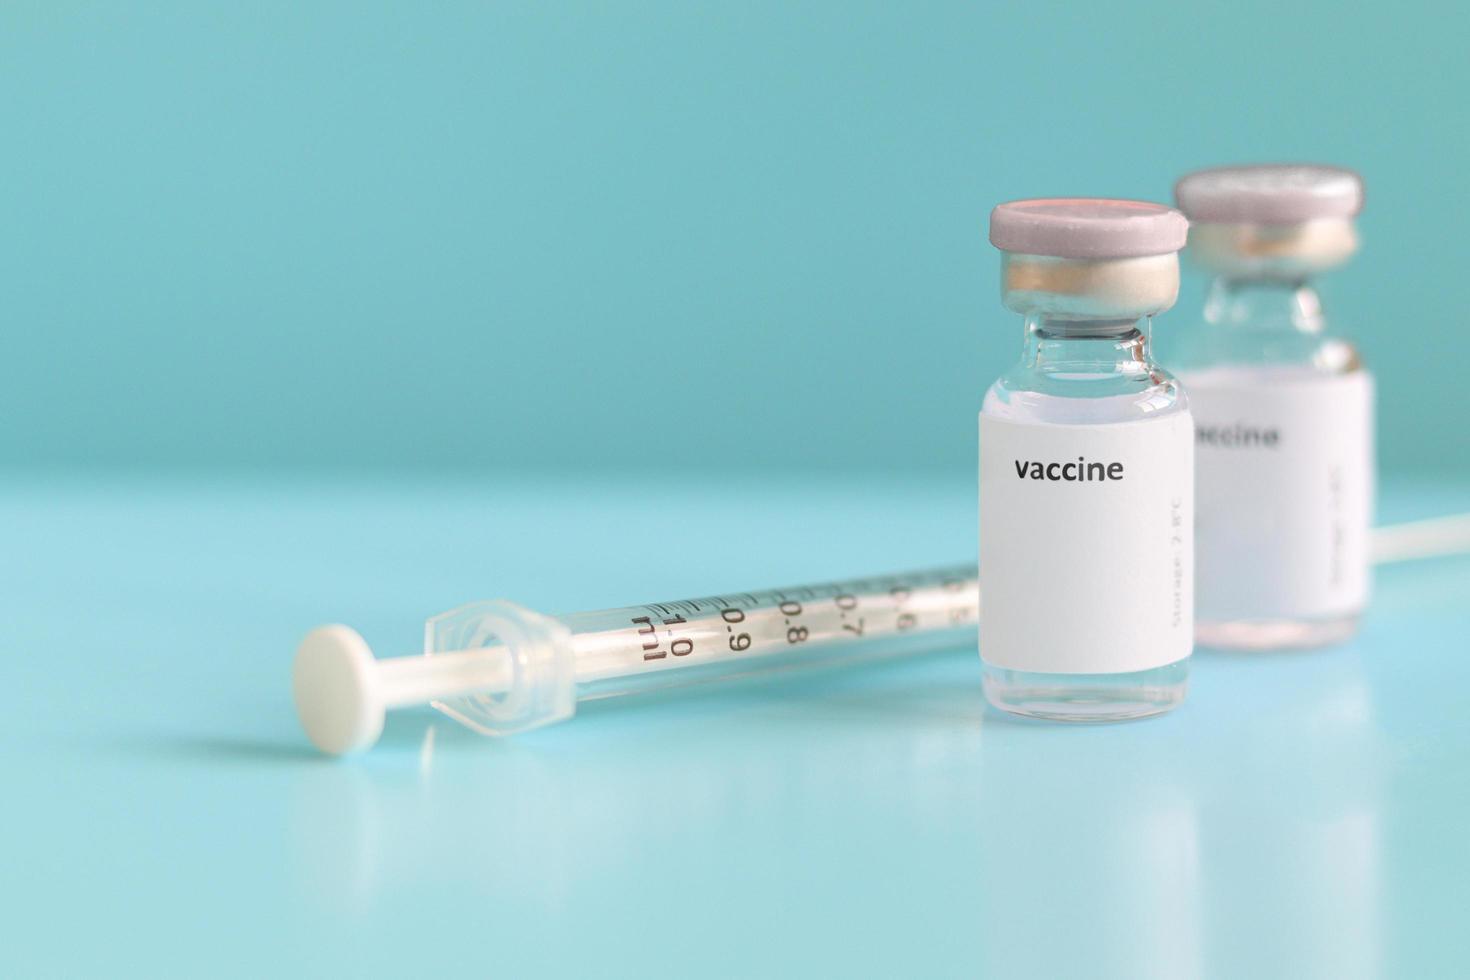 glasflaskor innehållande flytande medicinskt vaccin som används för att skjutas för injektion behandling med nålspruta på blå bakgrund och kopieringsutrymme, vaccination och immuniseringsvård för att förhindra virusutbrott foto